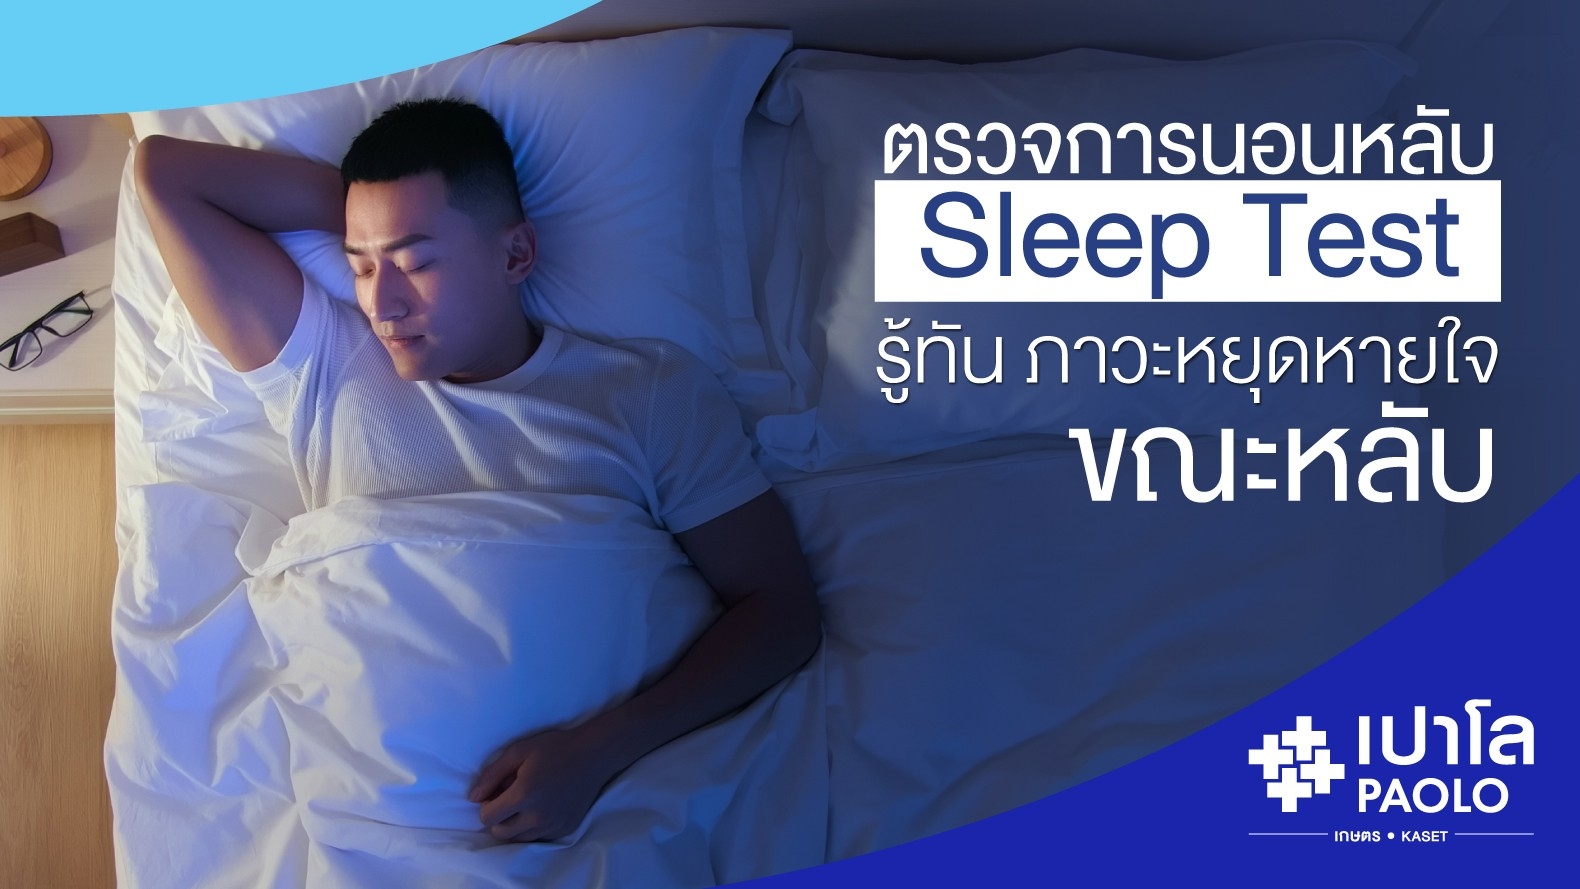 ตรวจการนอนหลับ Sleep Test  รู้ทัน...ภาวะหยุดหายใจขณะหลับป้องกันอันตรายต่อชีวิต